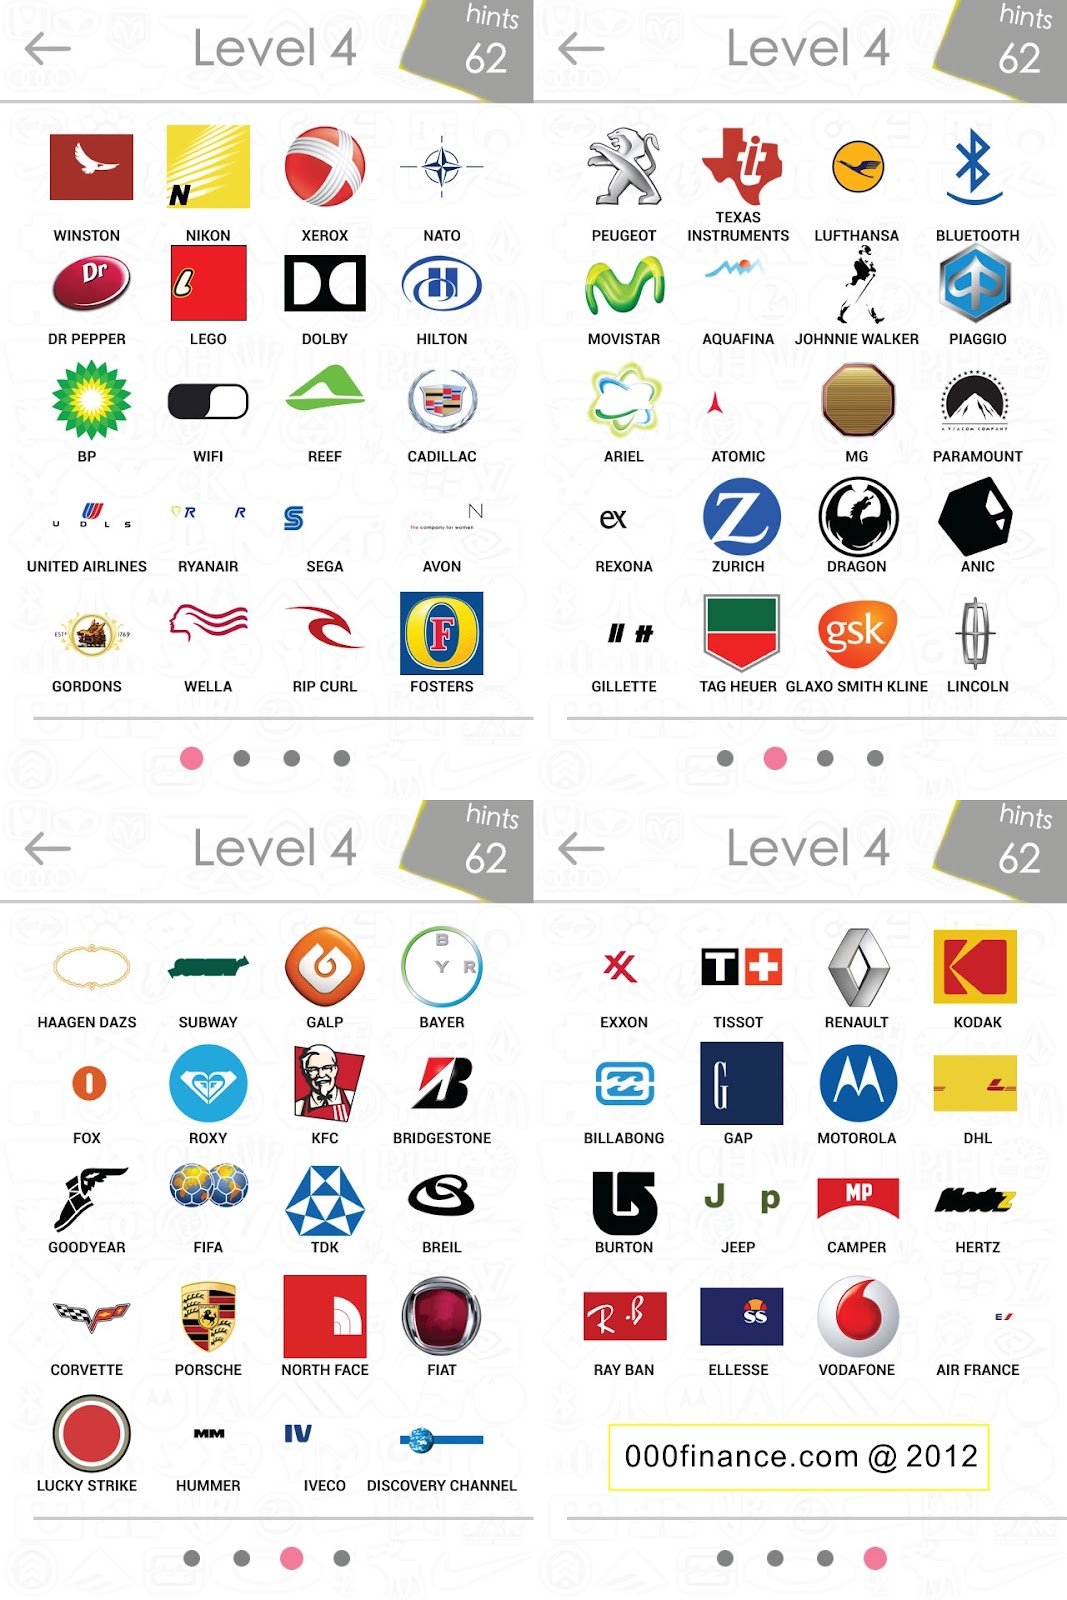 picture quiz logos level 5